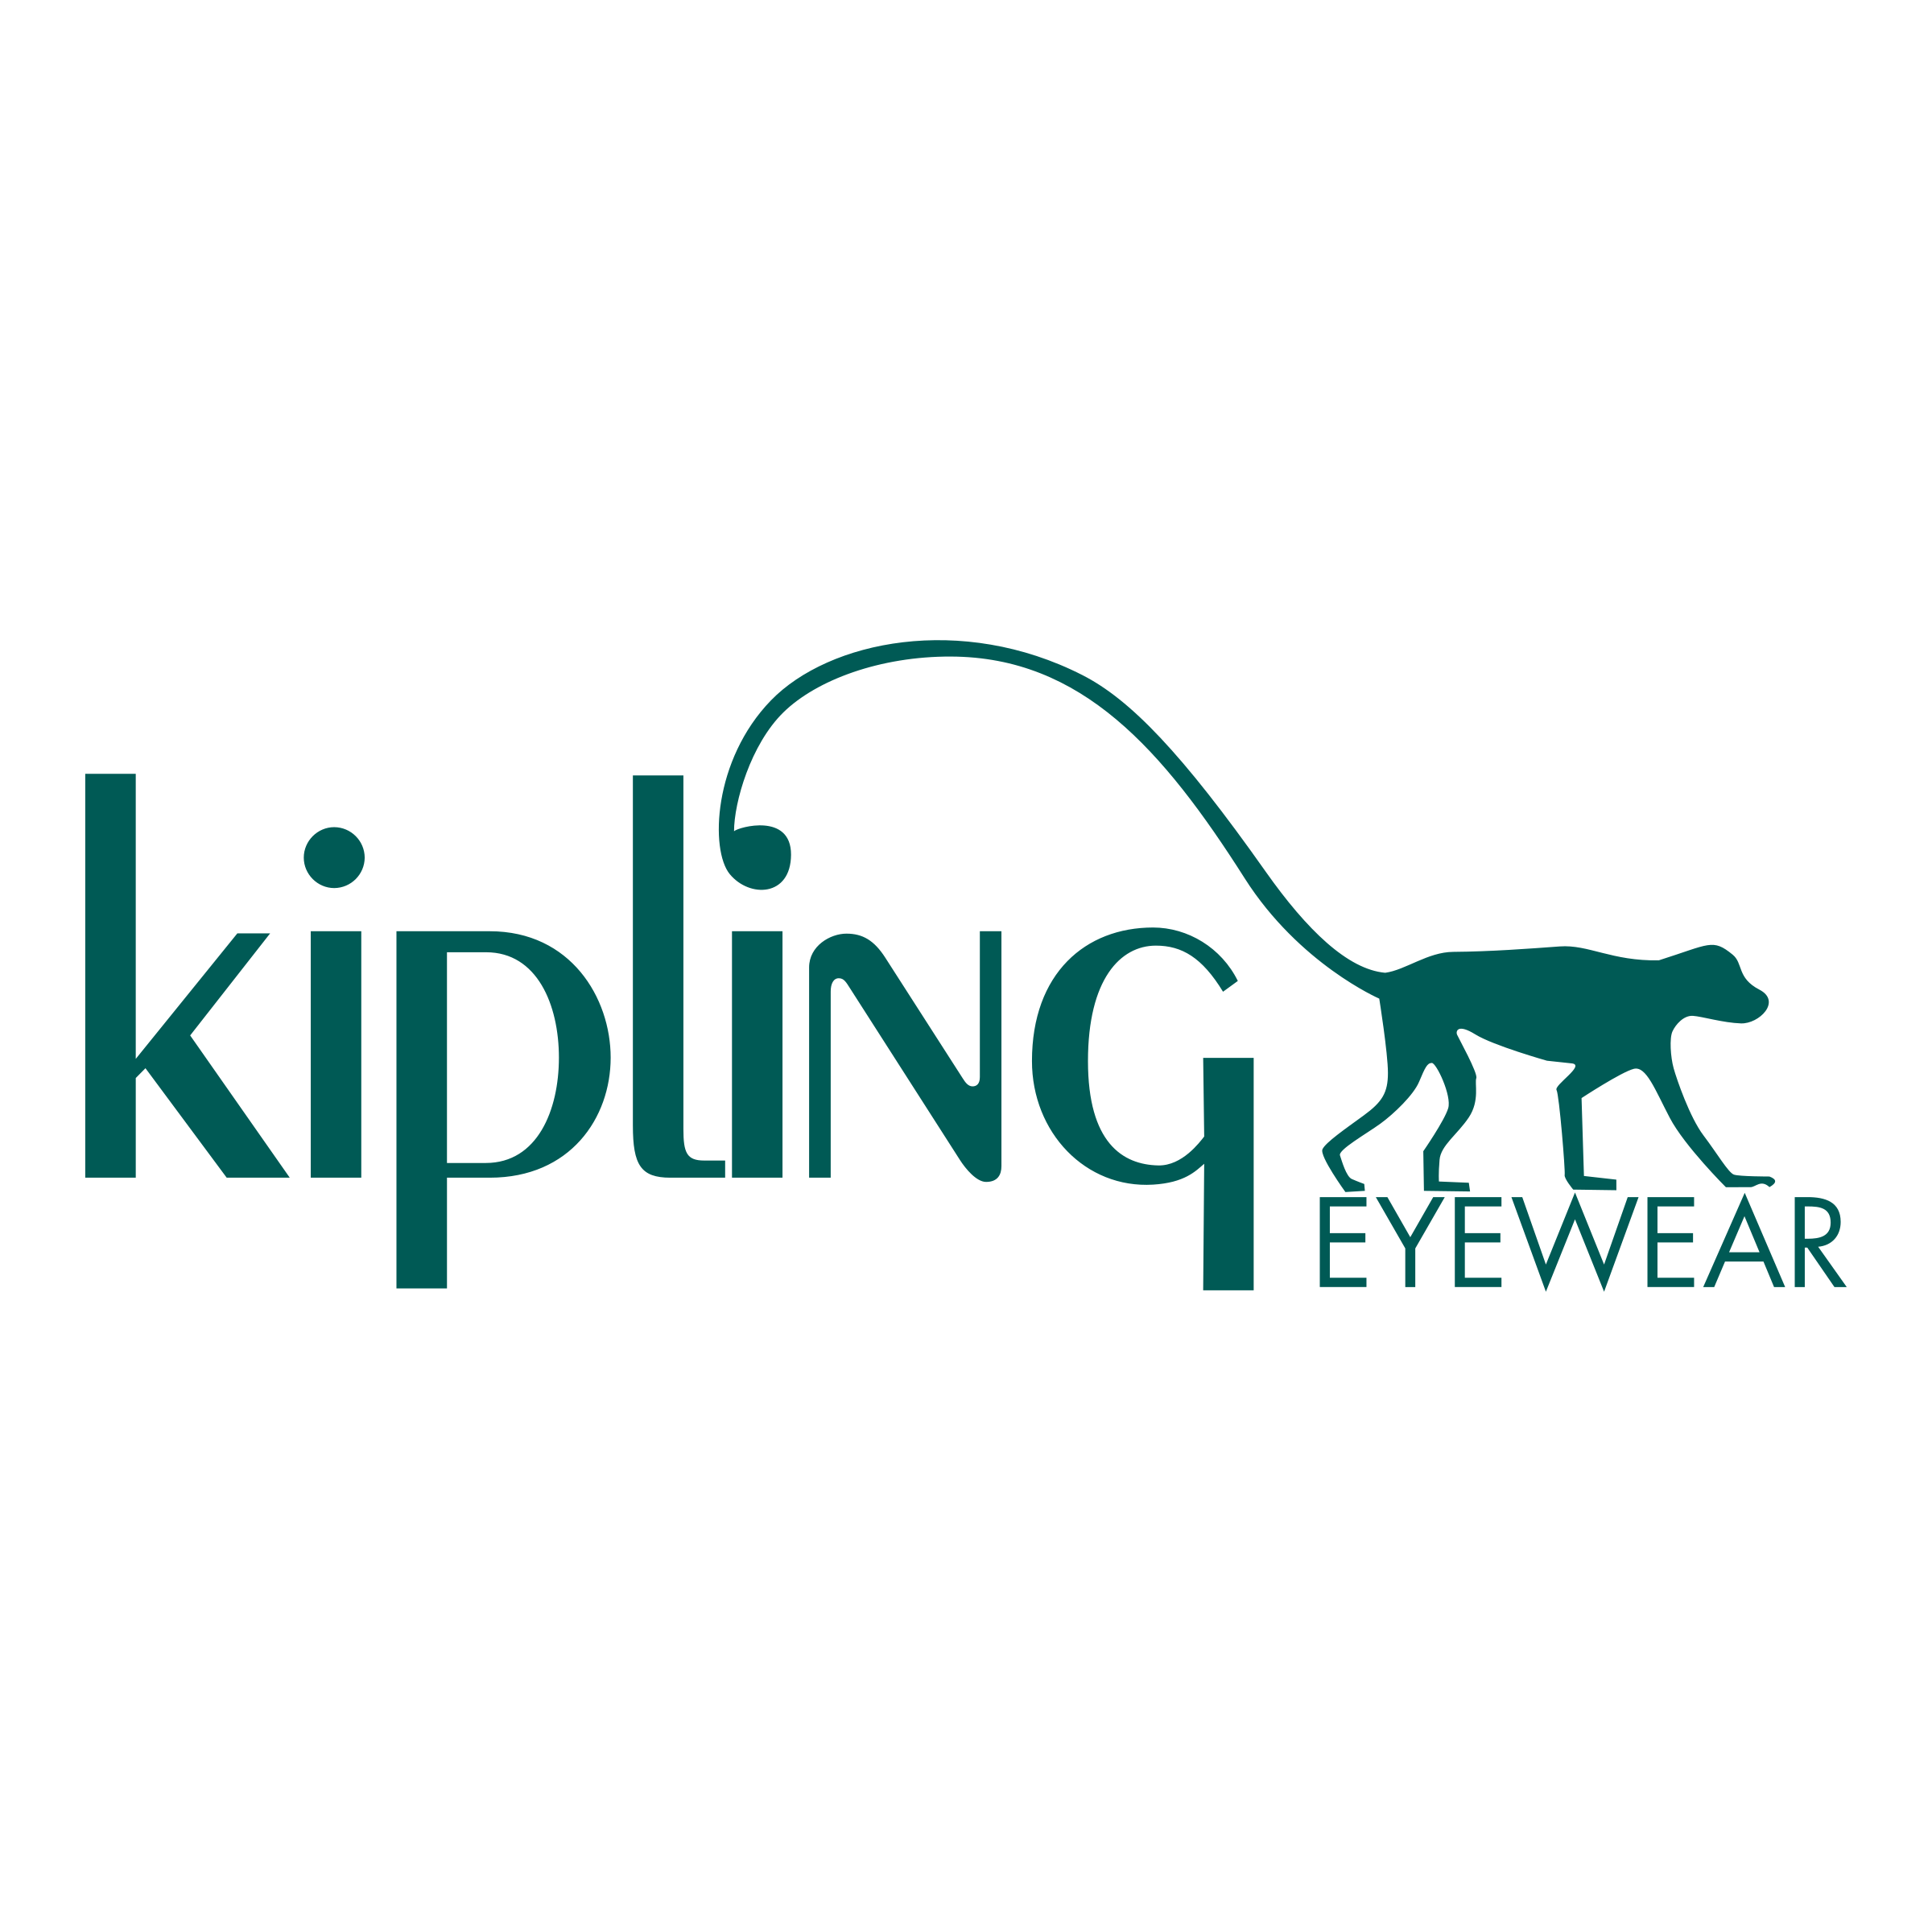 Kaixin001 Logo - Kipling Eyewear Logo PNG Transparent & SVG Vector - Freebie Supply